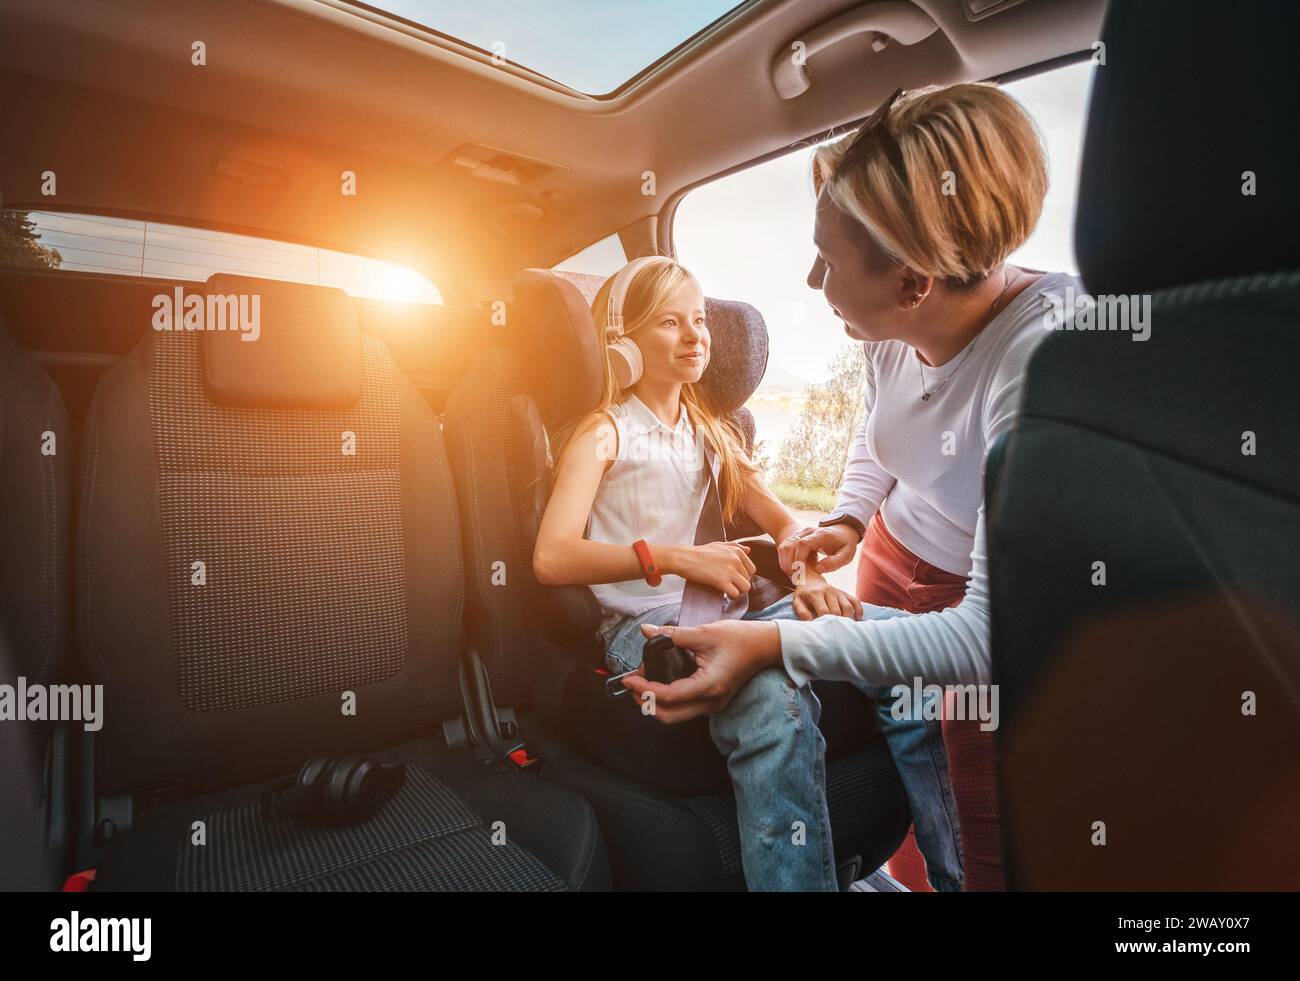 À l'intérieur de la photo de voiture d'une mère fixant avec la ceinture de sécurité automatique sa petite fille assise dans le siège d'enfant. Fille écoutant de la musique à l'aide d'écouteurs Banque D'Images